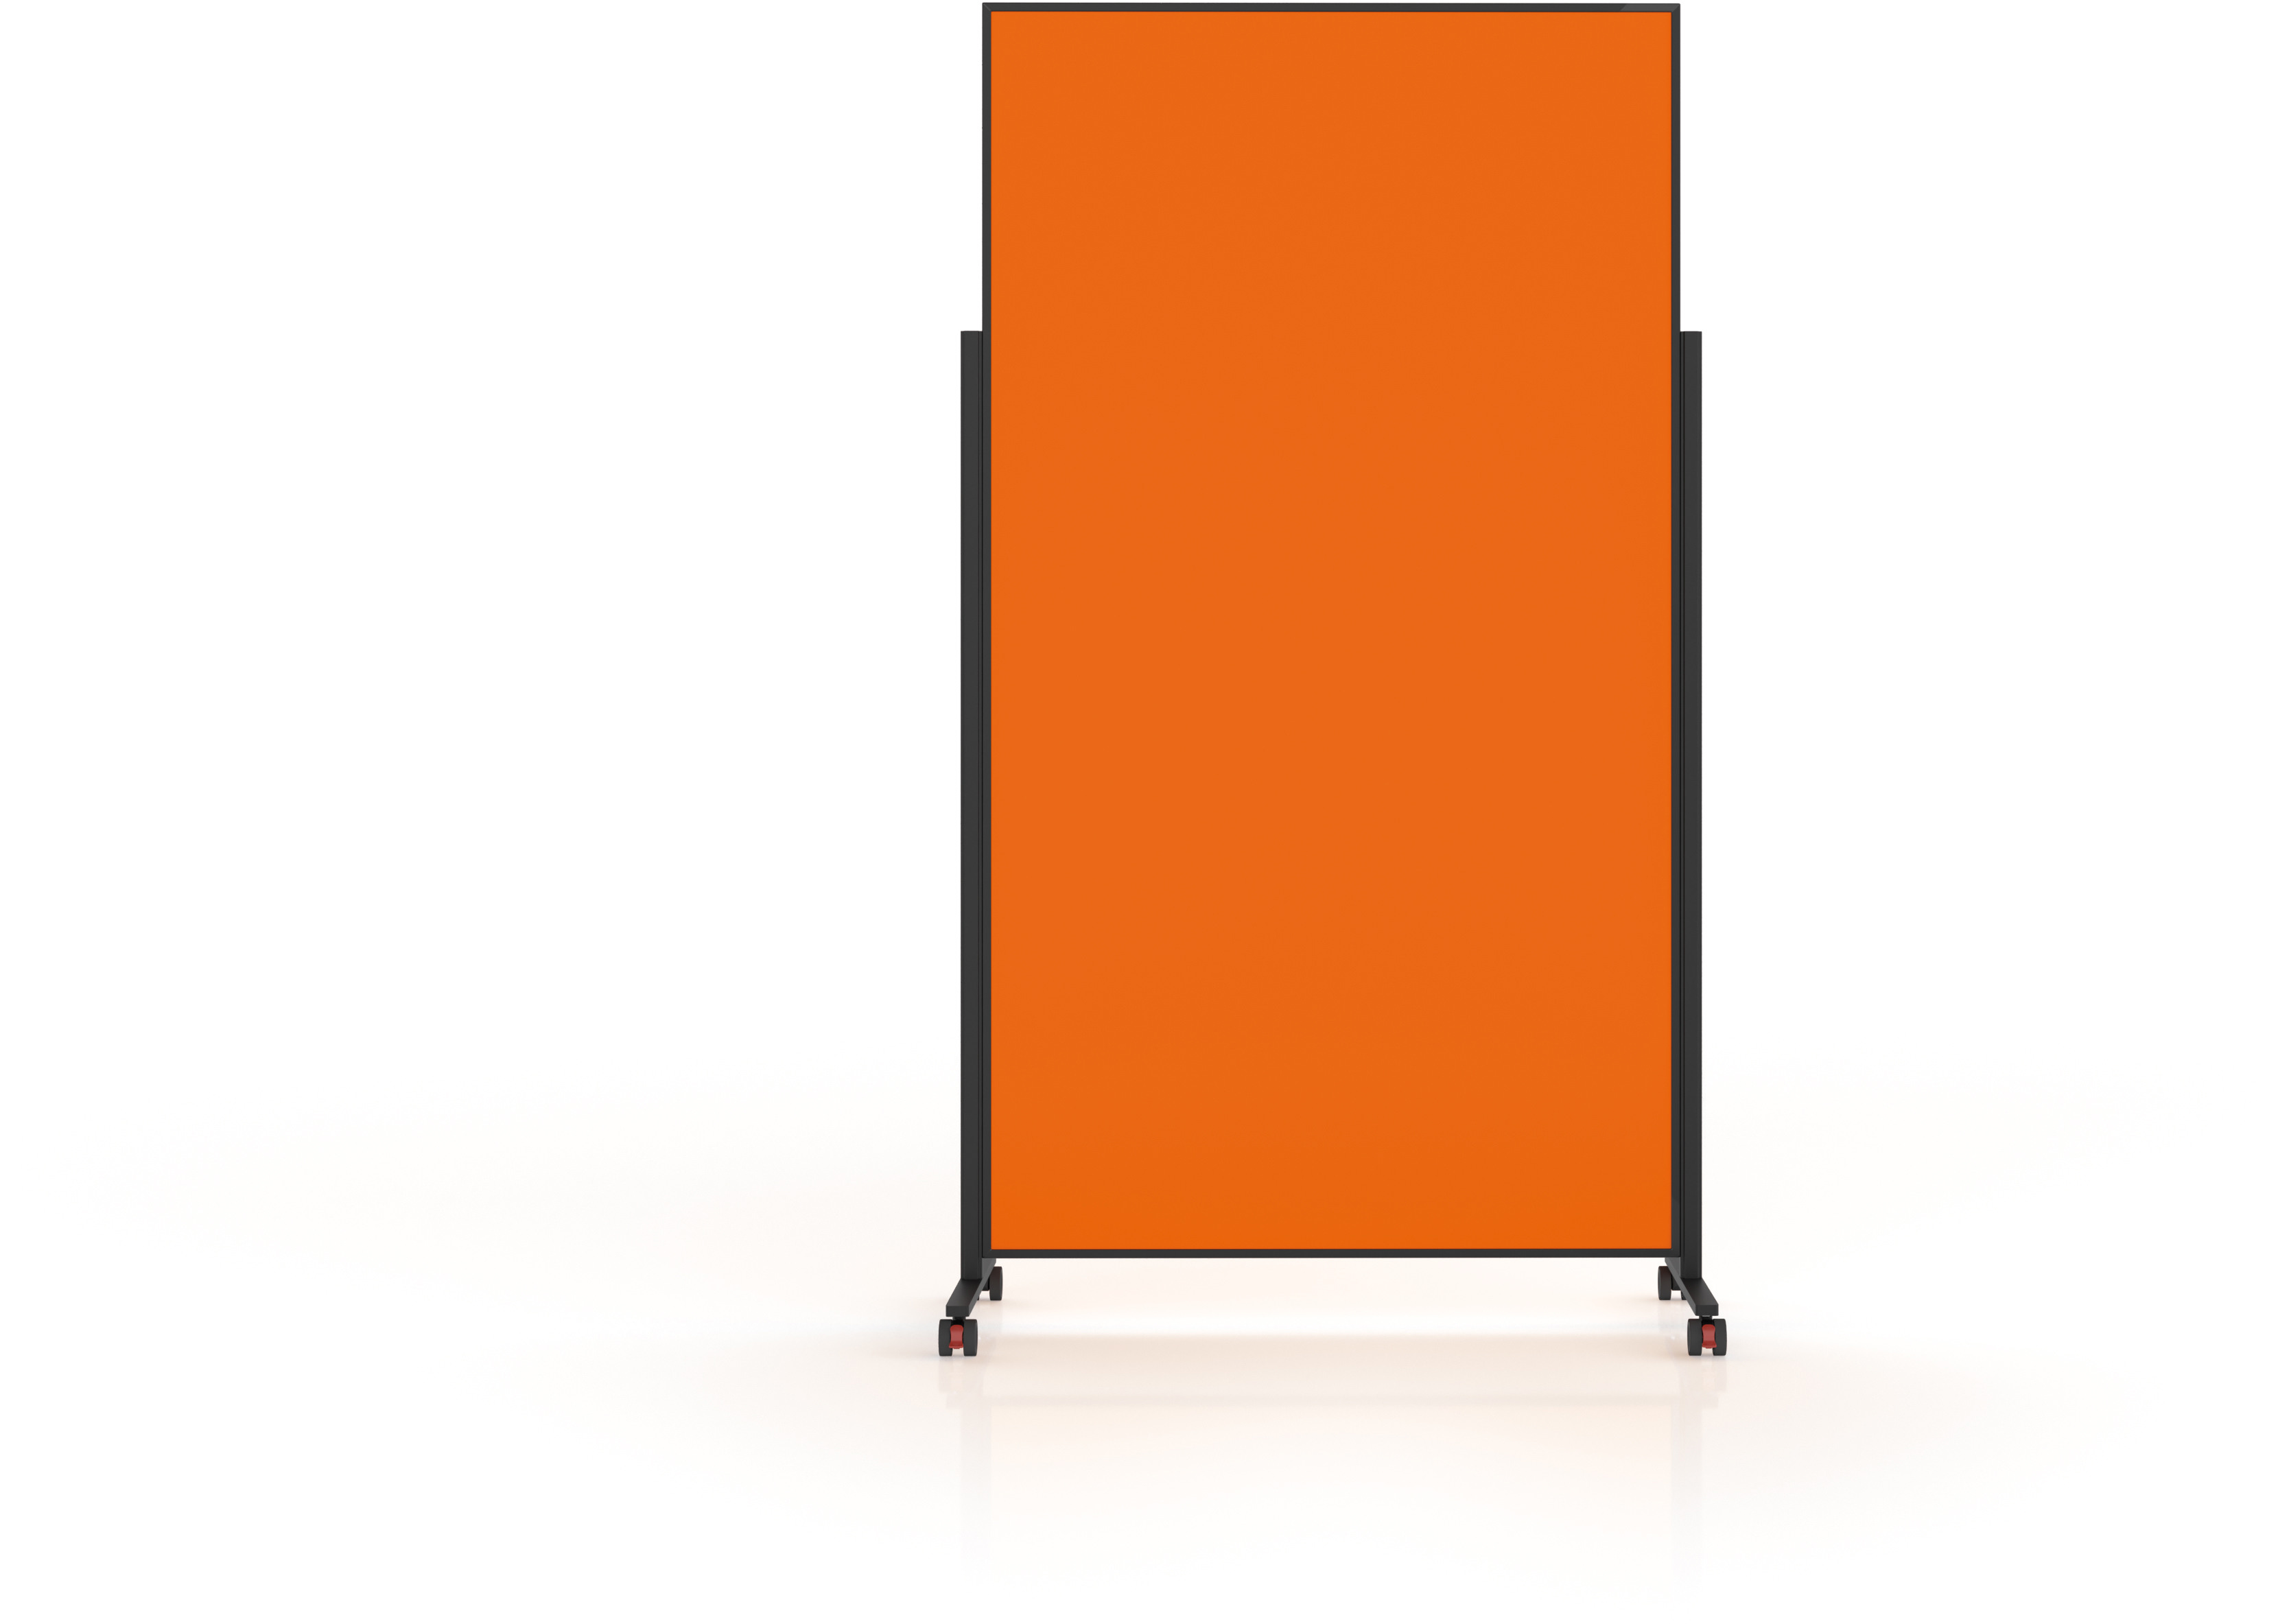 MAGNETOPLAN Design Tableau de Présent. VP 1181244 orange, feutre 1000x1800mm